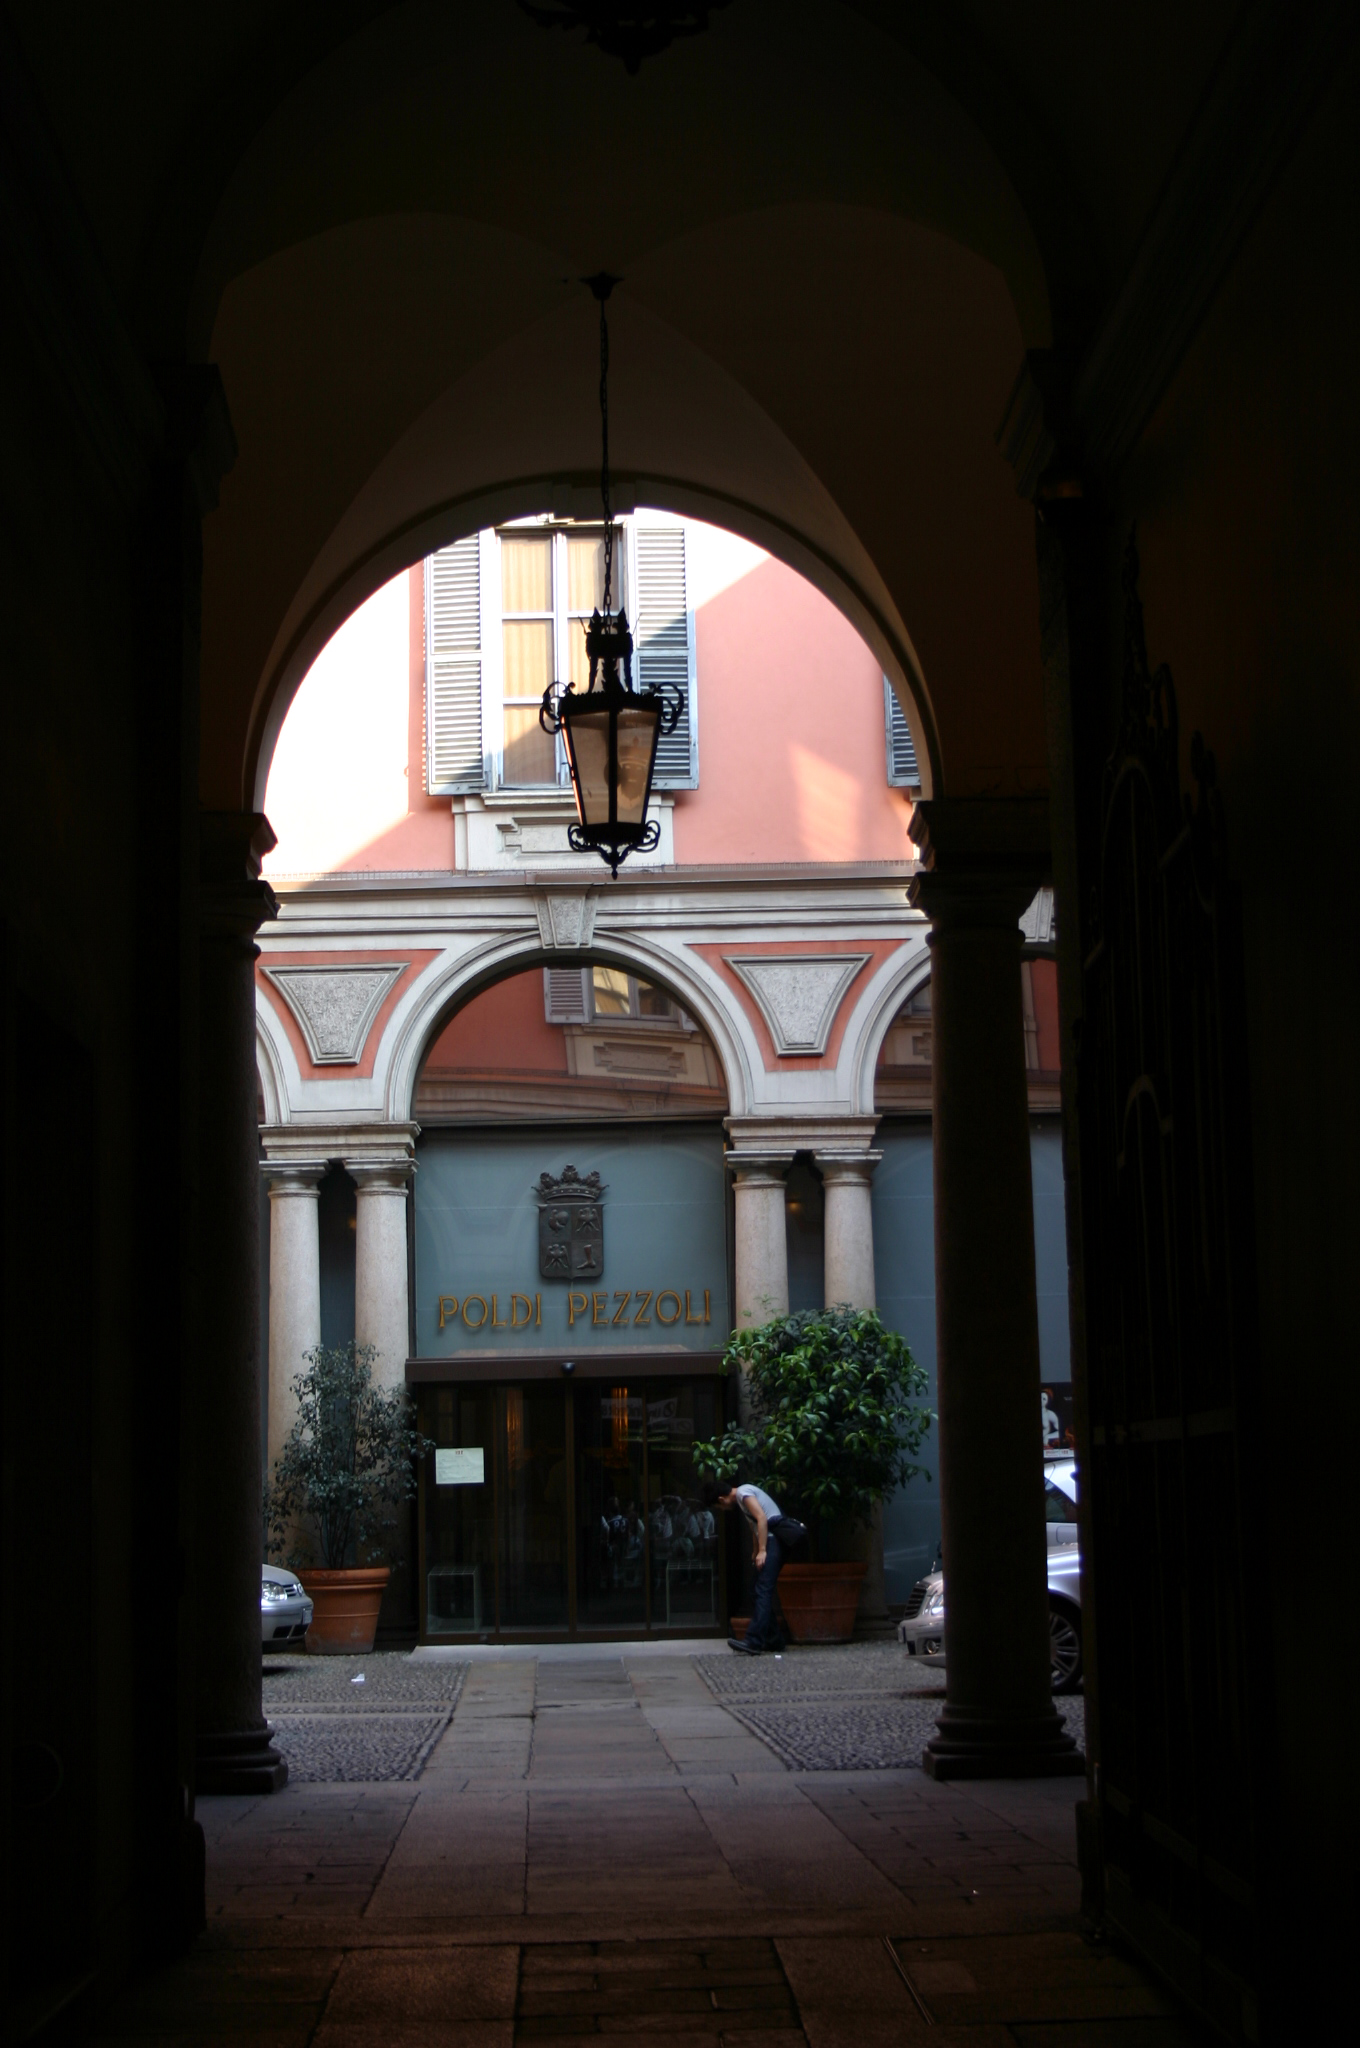 poldi pezzoli museum Milan Italy 